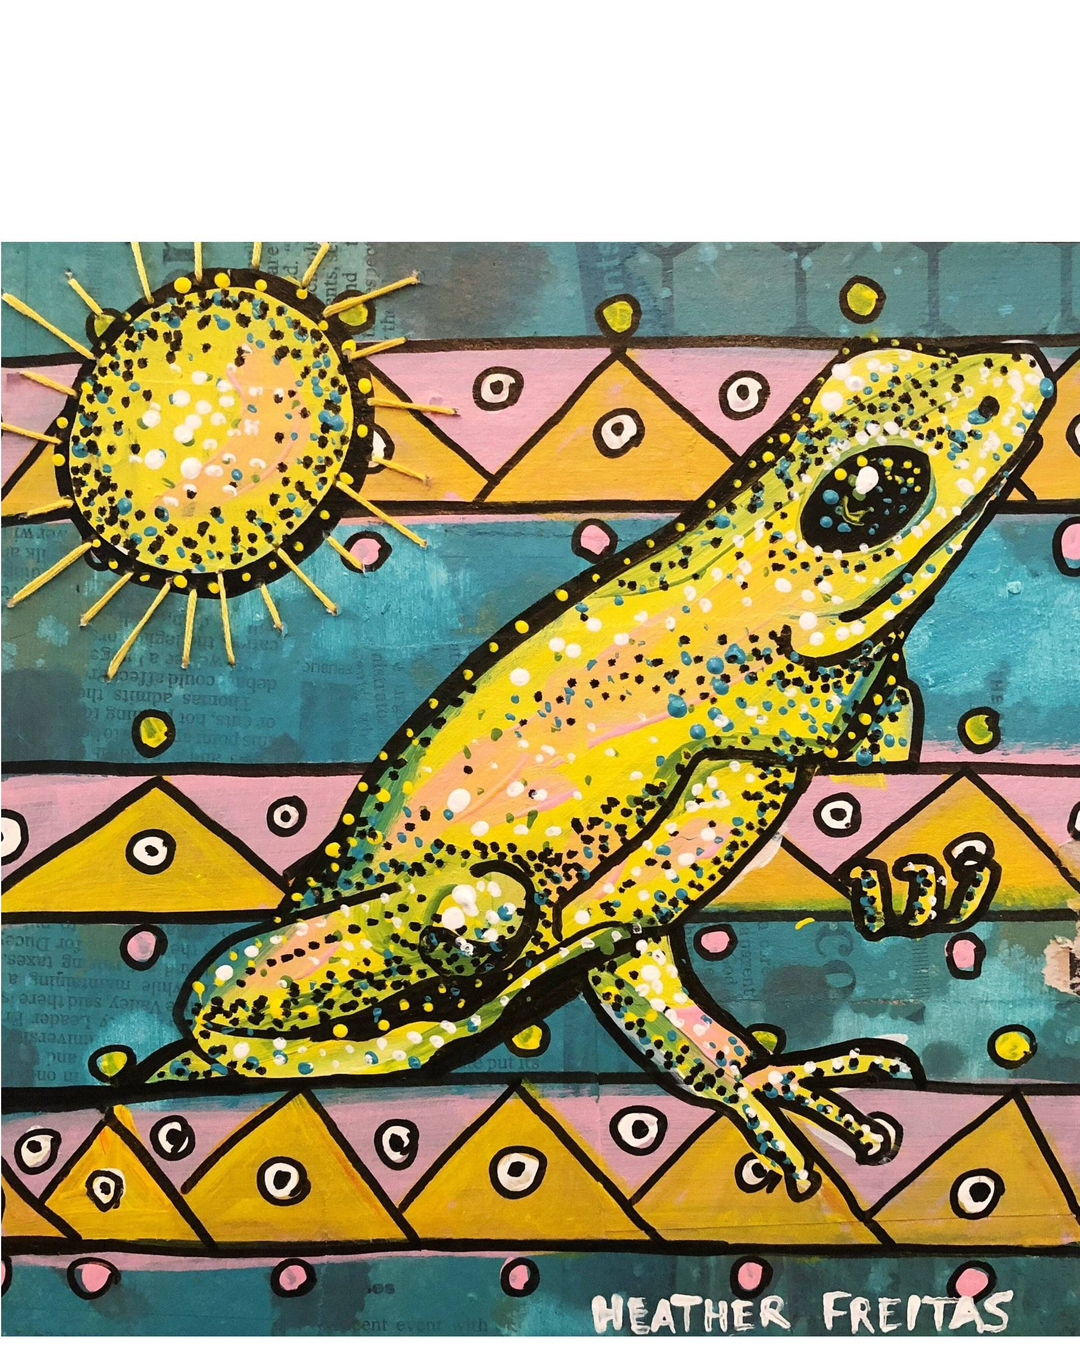 The Frogs Sun - Heather Freitas 